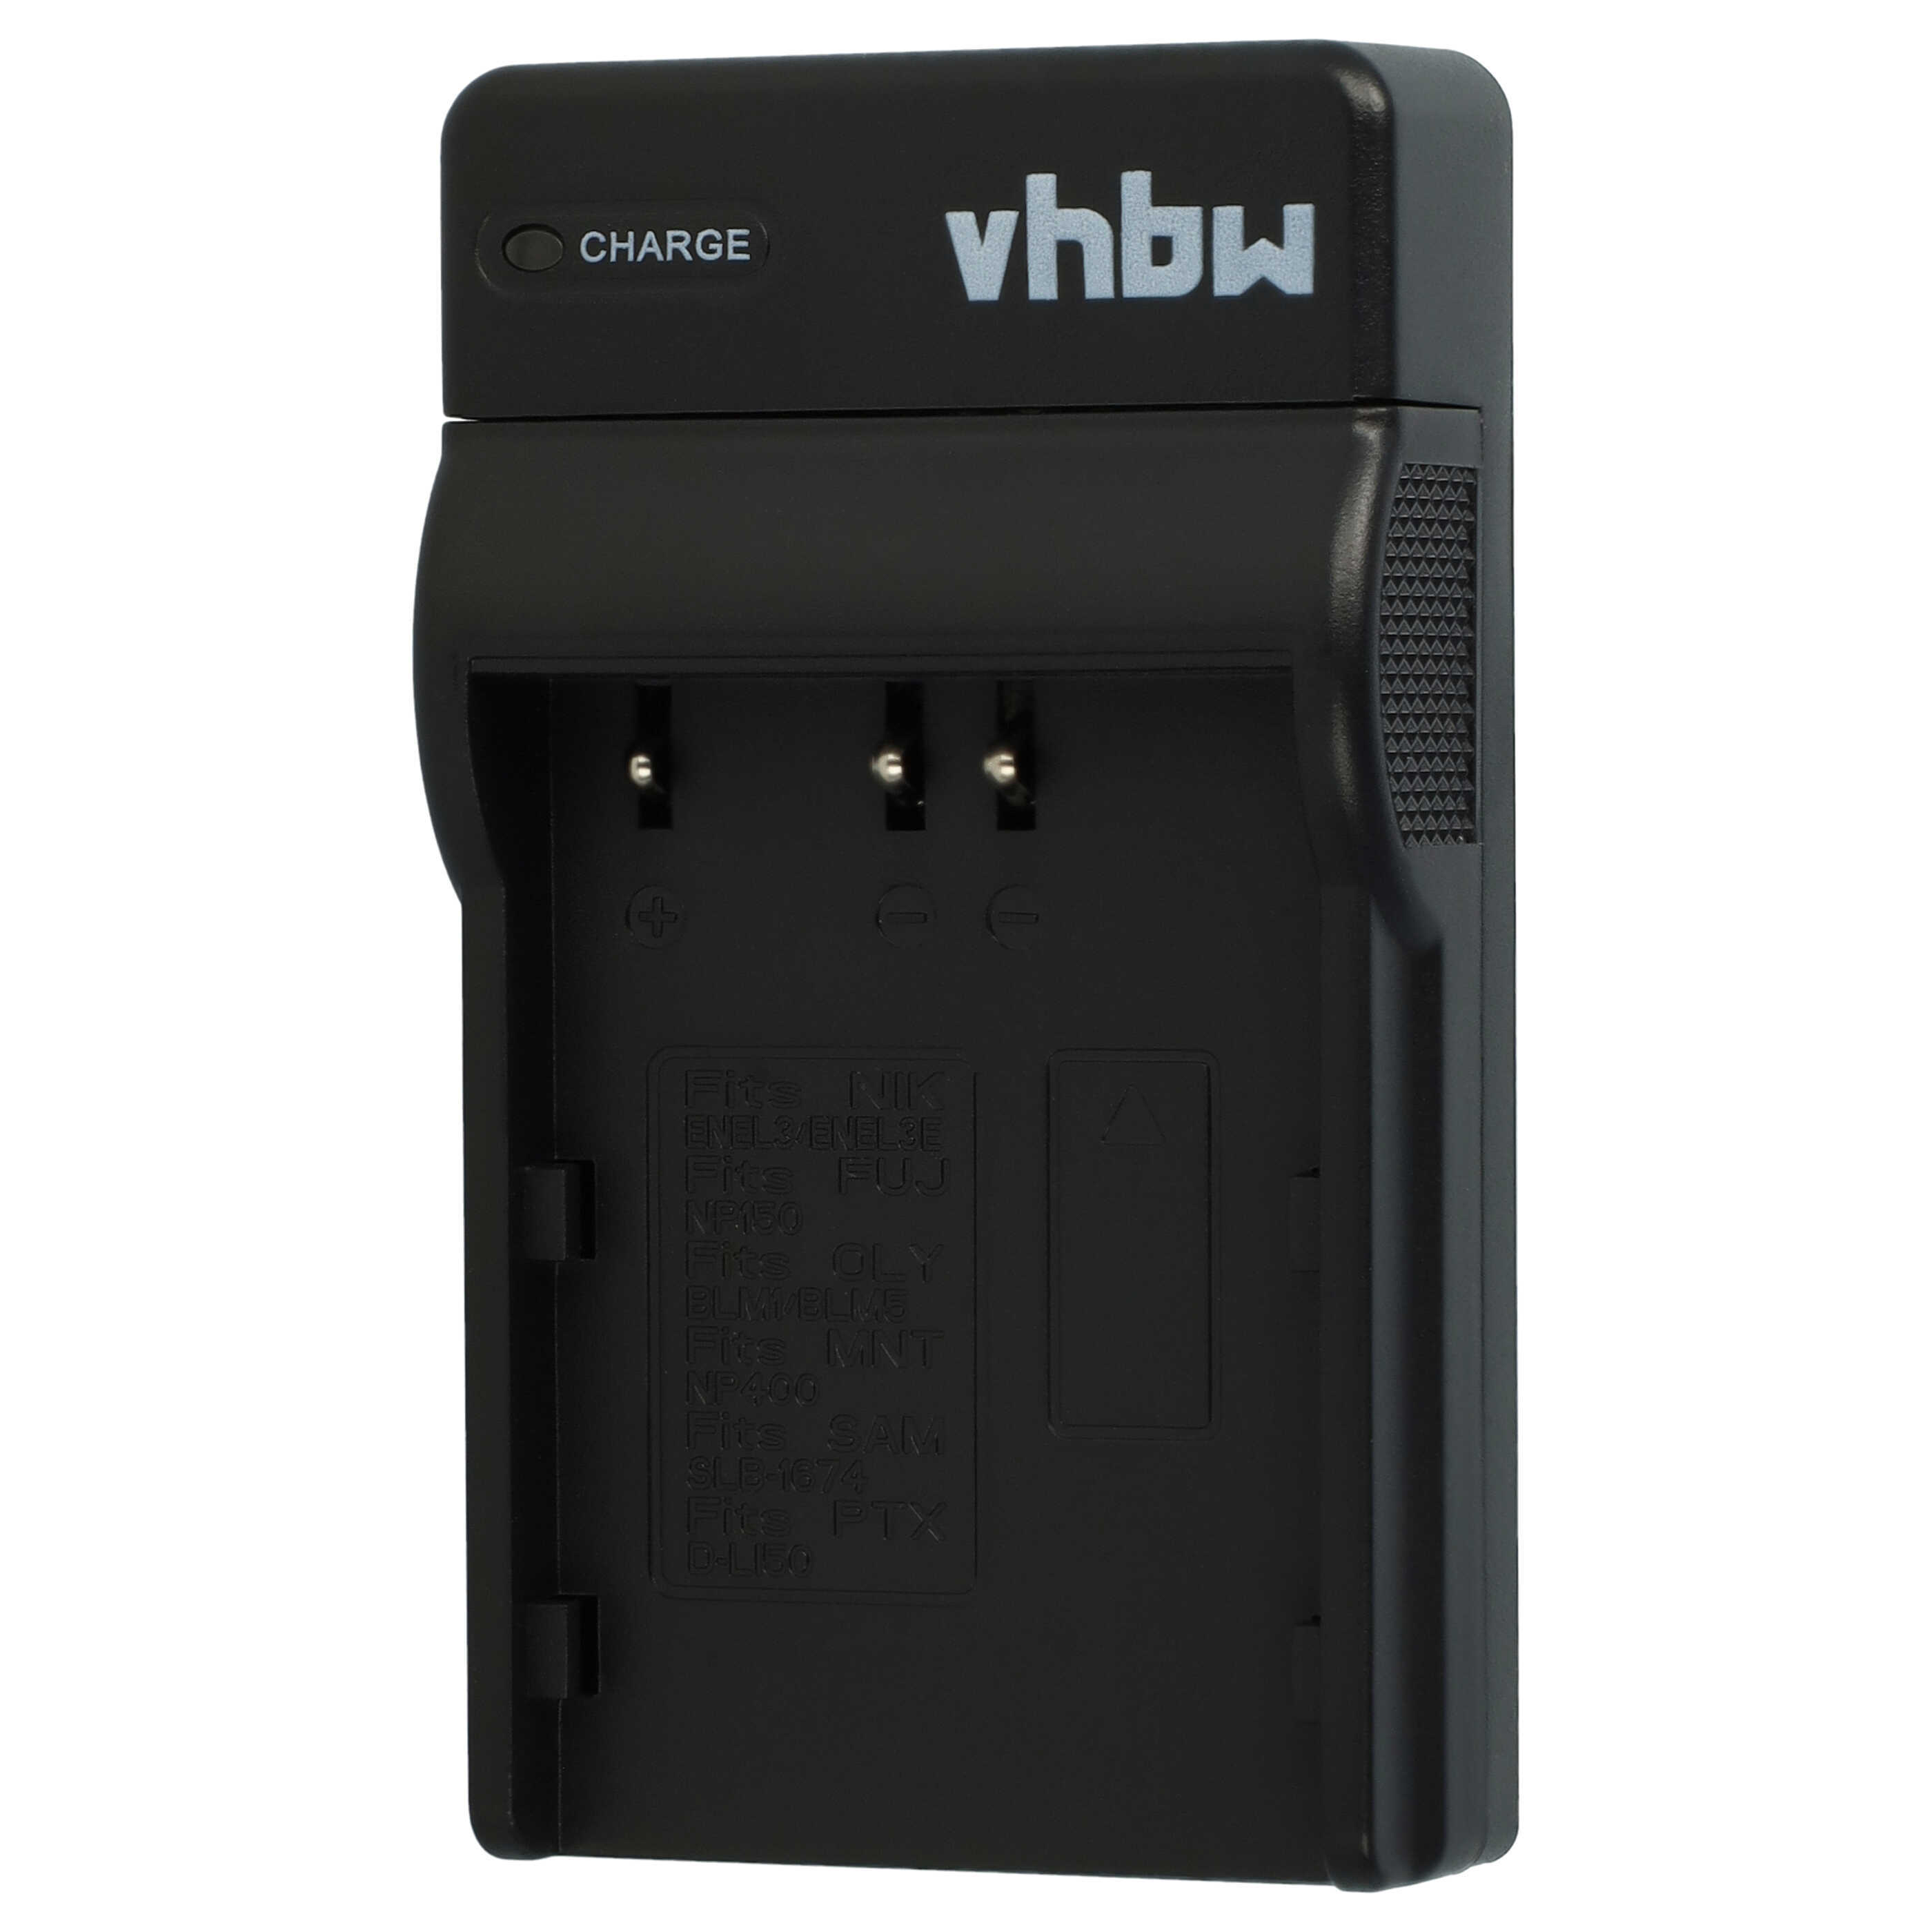 Cargador para cámara FinePix - 0,5A 8,4V 43,5cm